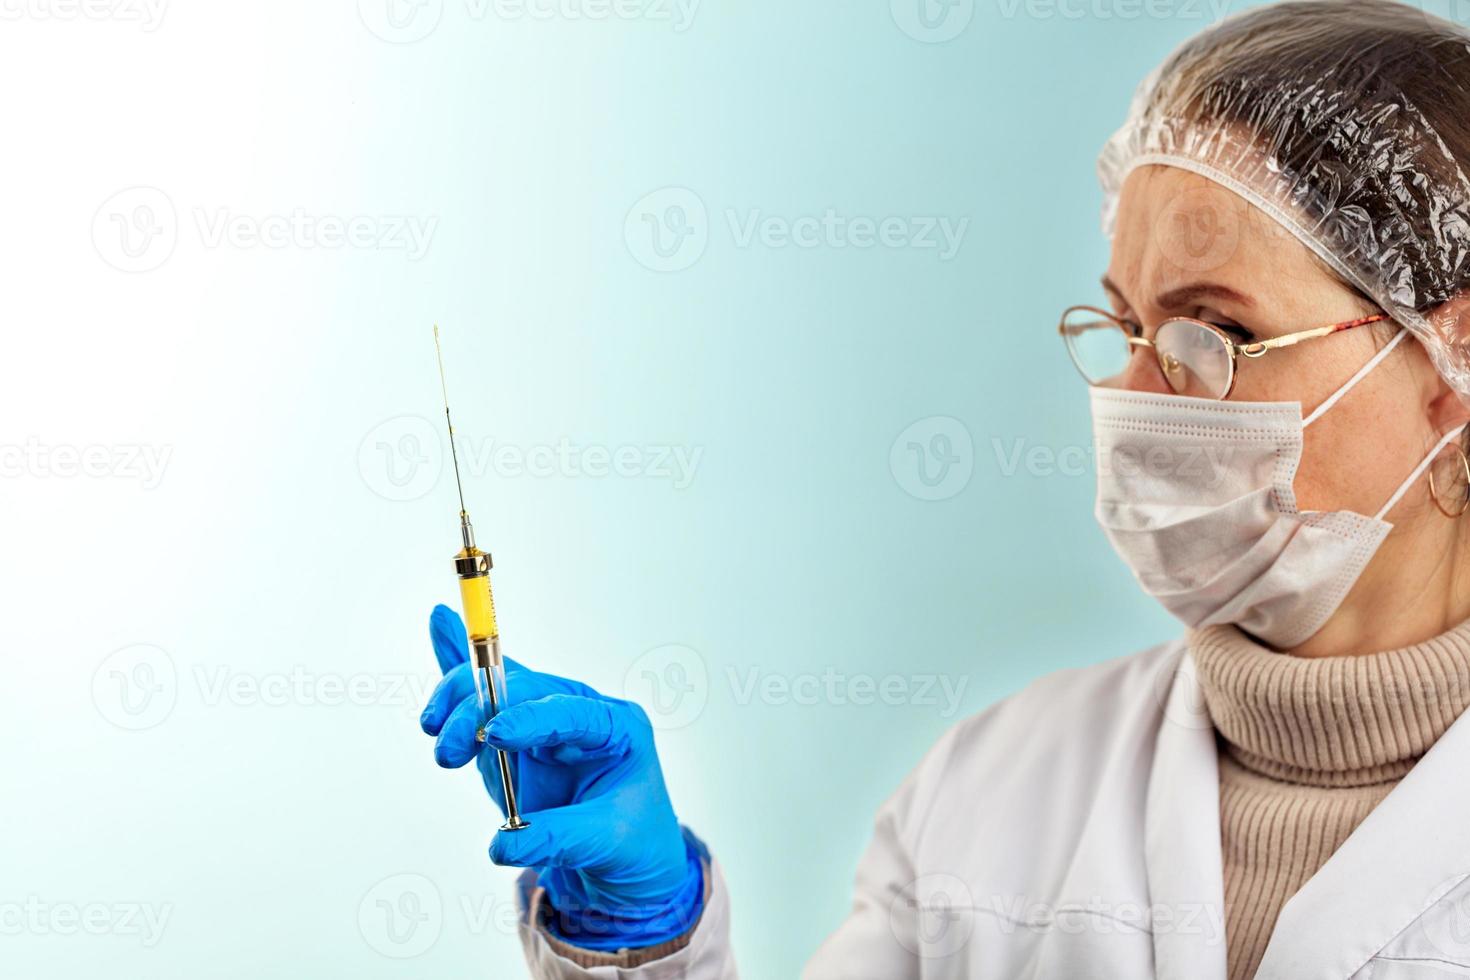 un medico con un guanto medico in lattice controlla il vaccino da una piccola siringa. il concetto di protezione contro i virus. tema medico su uno sfondo turchese chiaro. foto